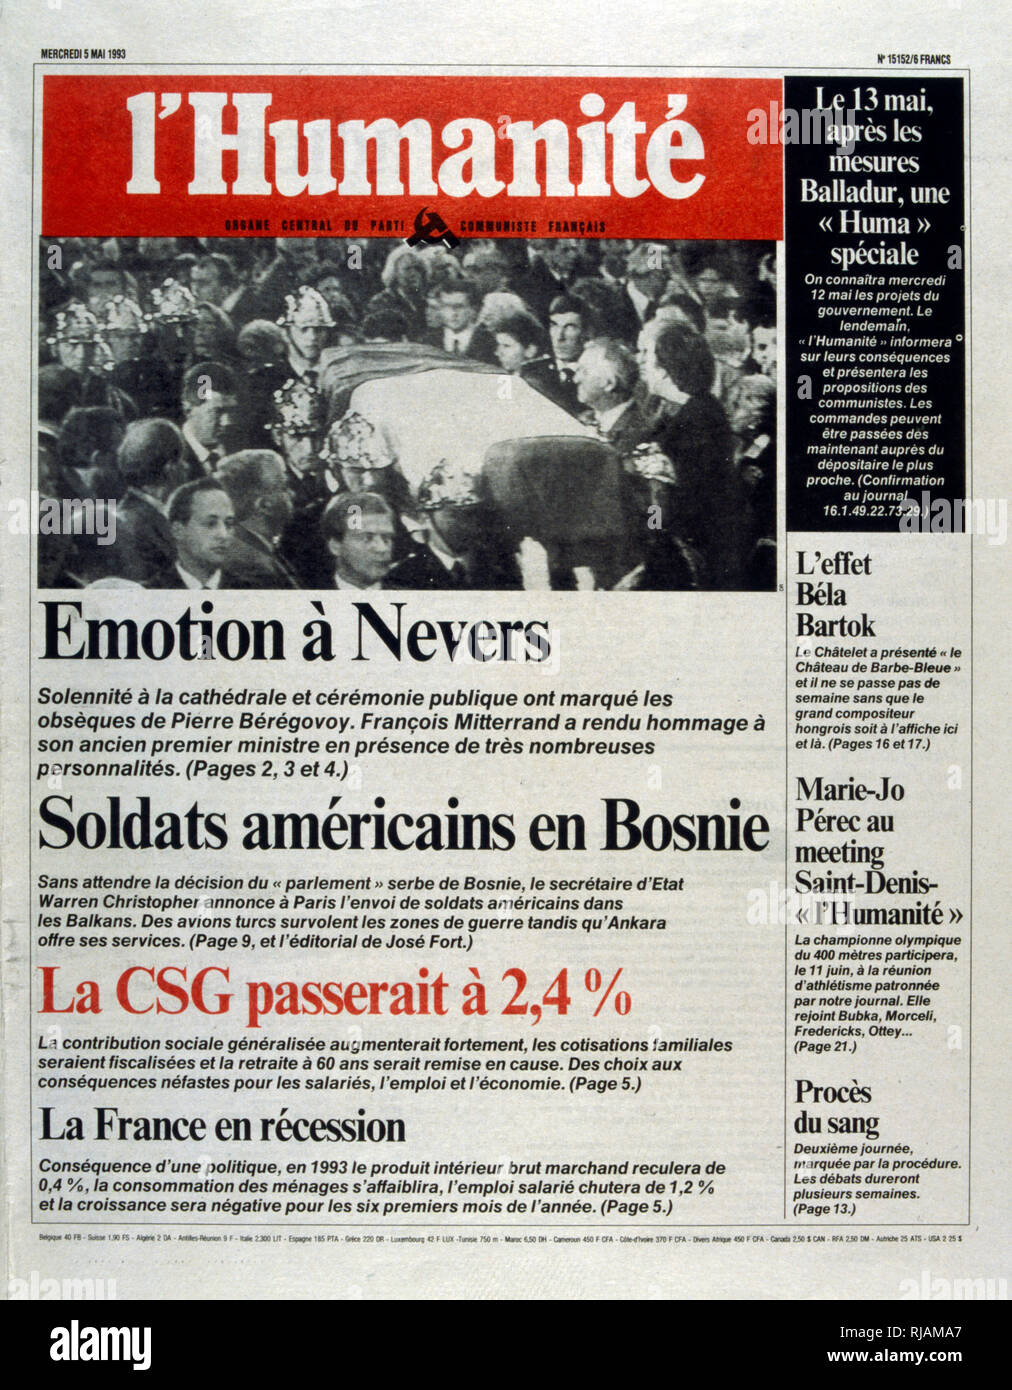 Vordere Seite der französischen Zeitung "L'Humanité" nach der Beerdigung von Pierre Beregovoy, Mai 1993. Pierre Eugene Beregovoy (1925 - 1 Mai 1993) war ein französischer Politiker, der als Premierminister von Frankreich unter Präsident Francois Mitterrand ab 2. April 1992 bis zum 29. März 1993 serviert. Er Selbstmord begangen. Stockfoto